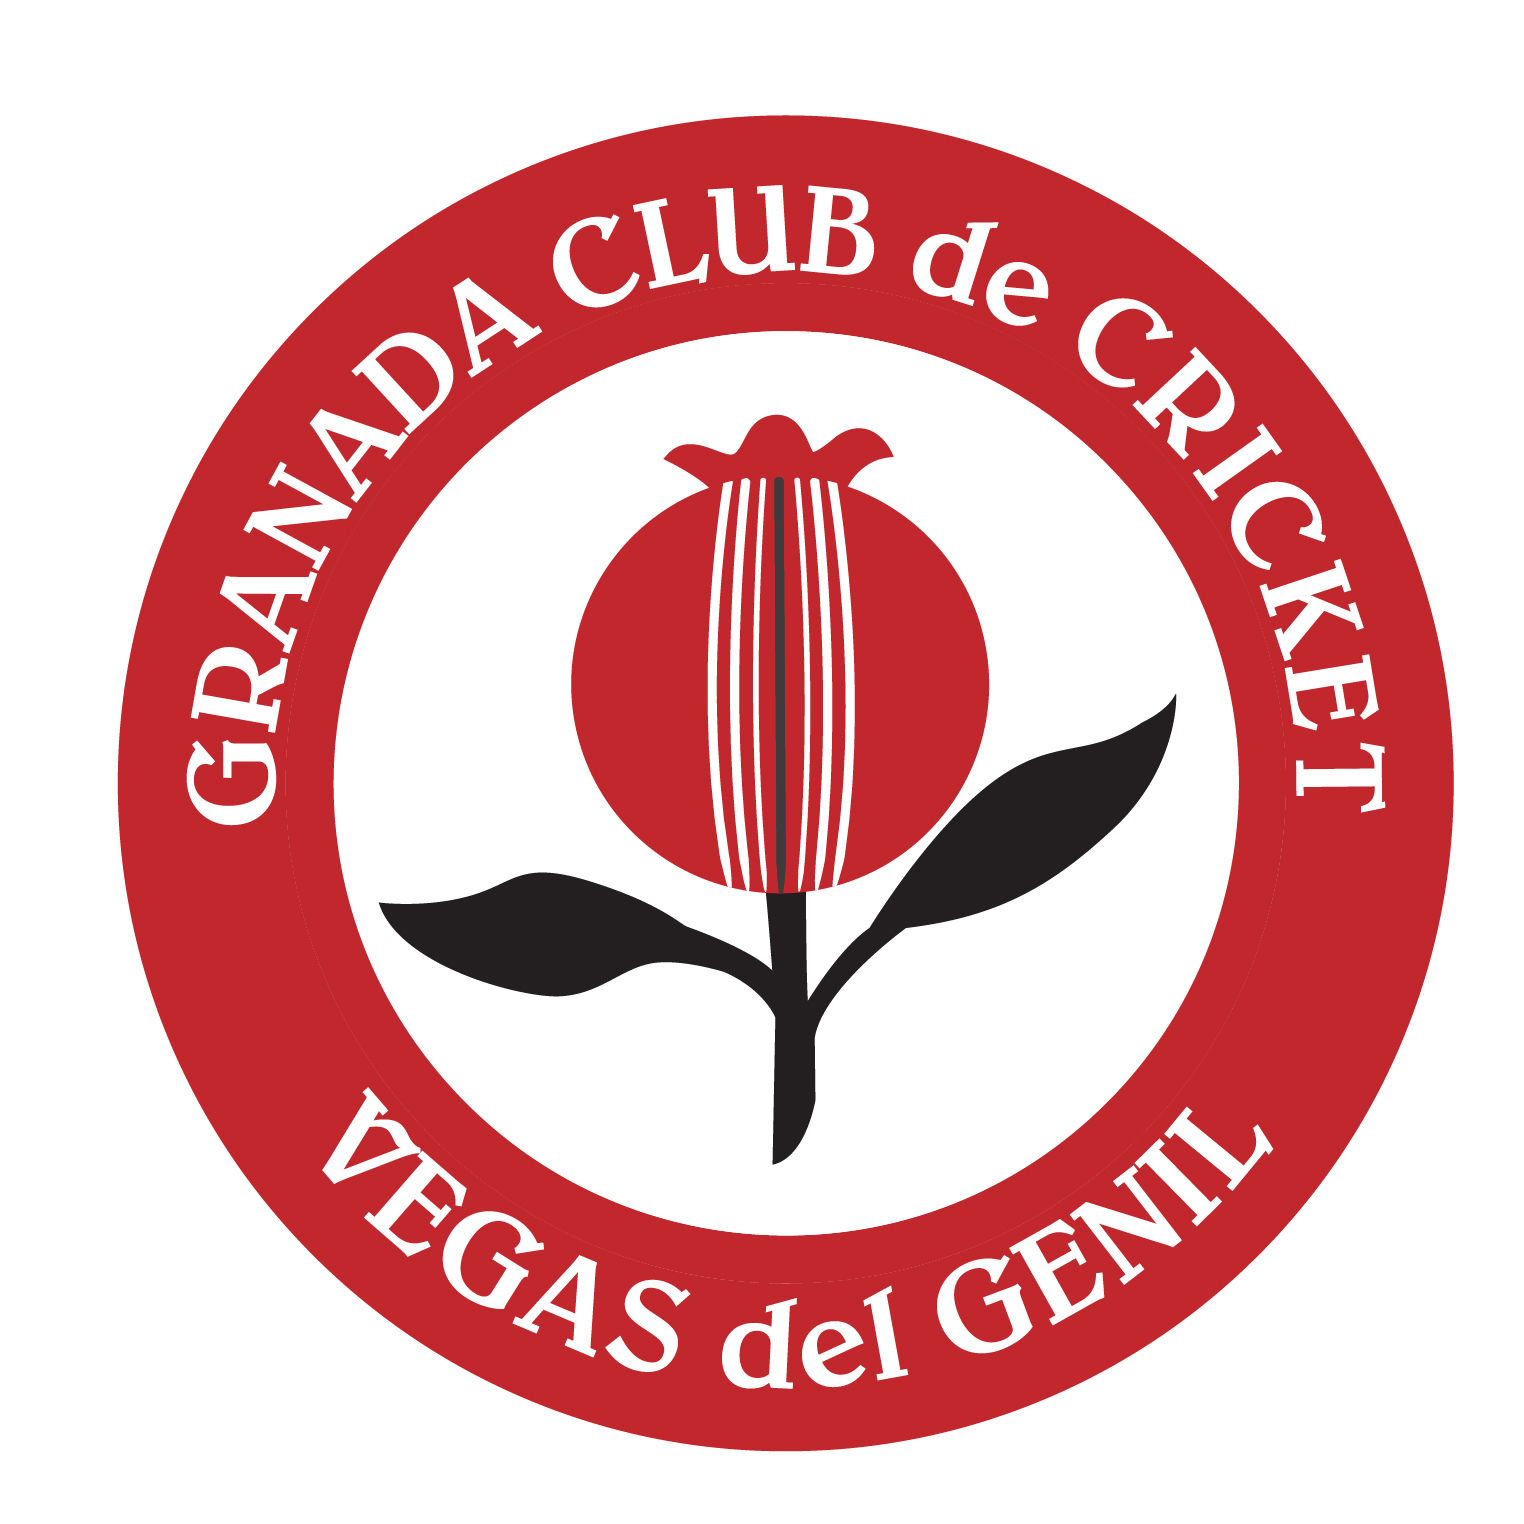 Granada Club de Cricket